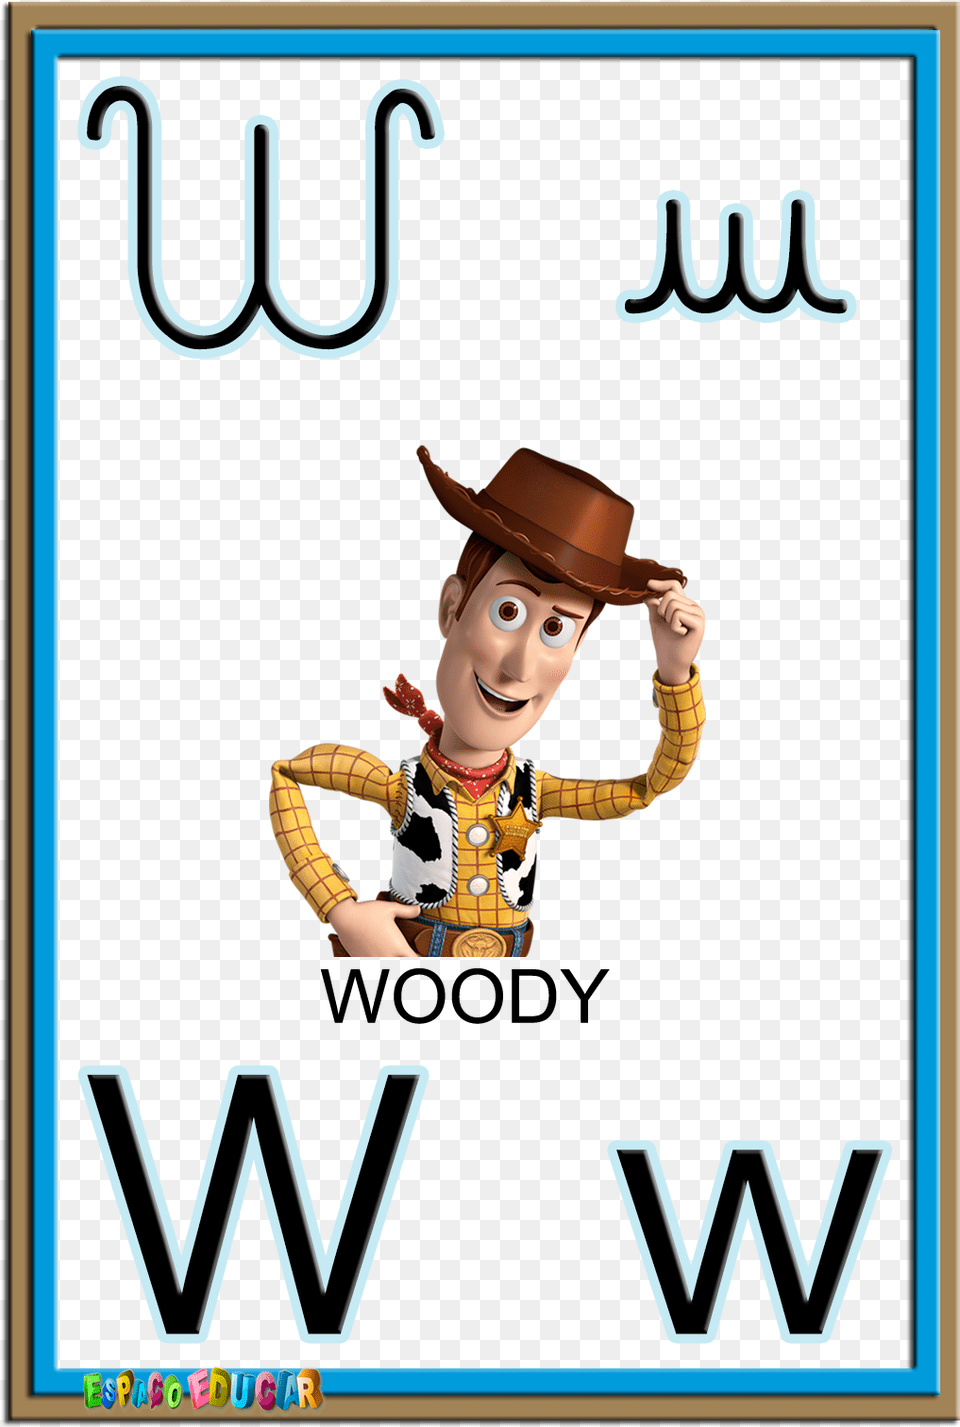 Alfabeto Quatro Tipos De Letras Colorido Ilustrado Toy Story 4 Woody, Advertisement, Baby, Person, Clothing Free Png Download